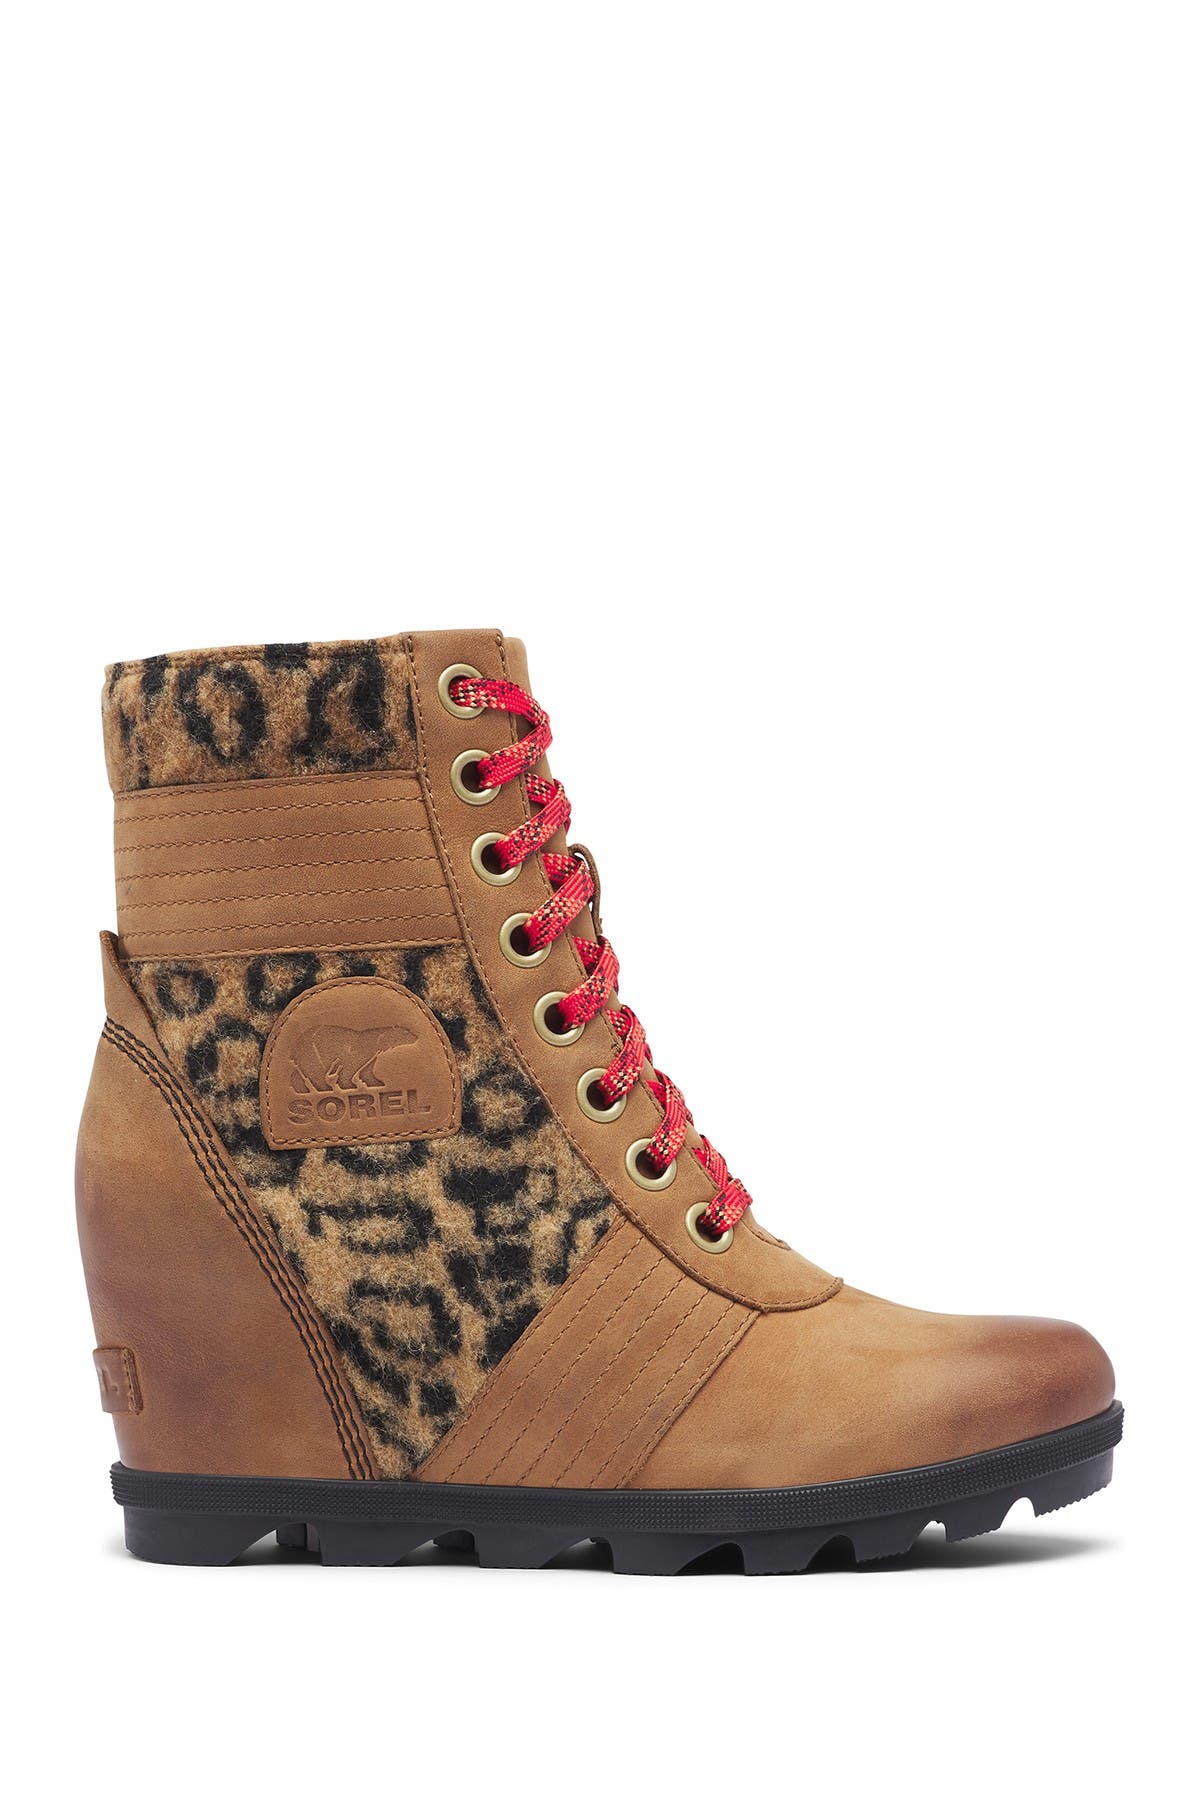 sorel leopard print boots